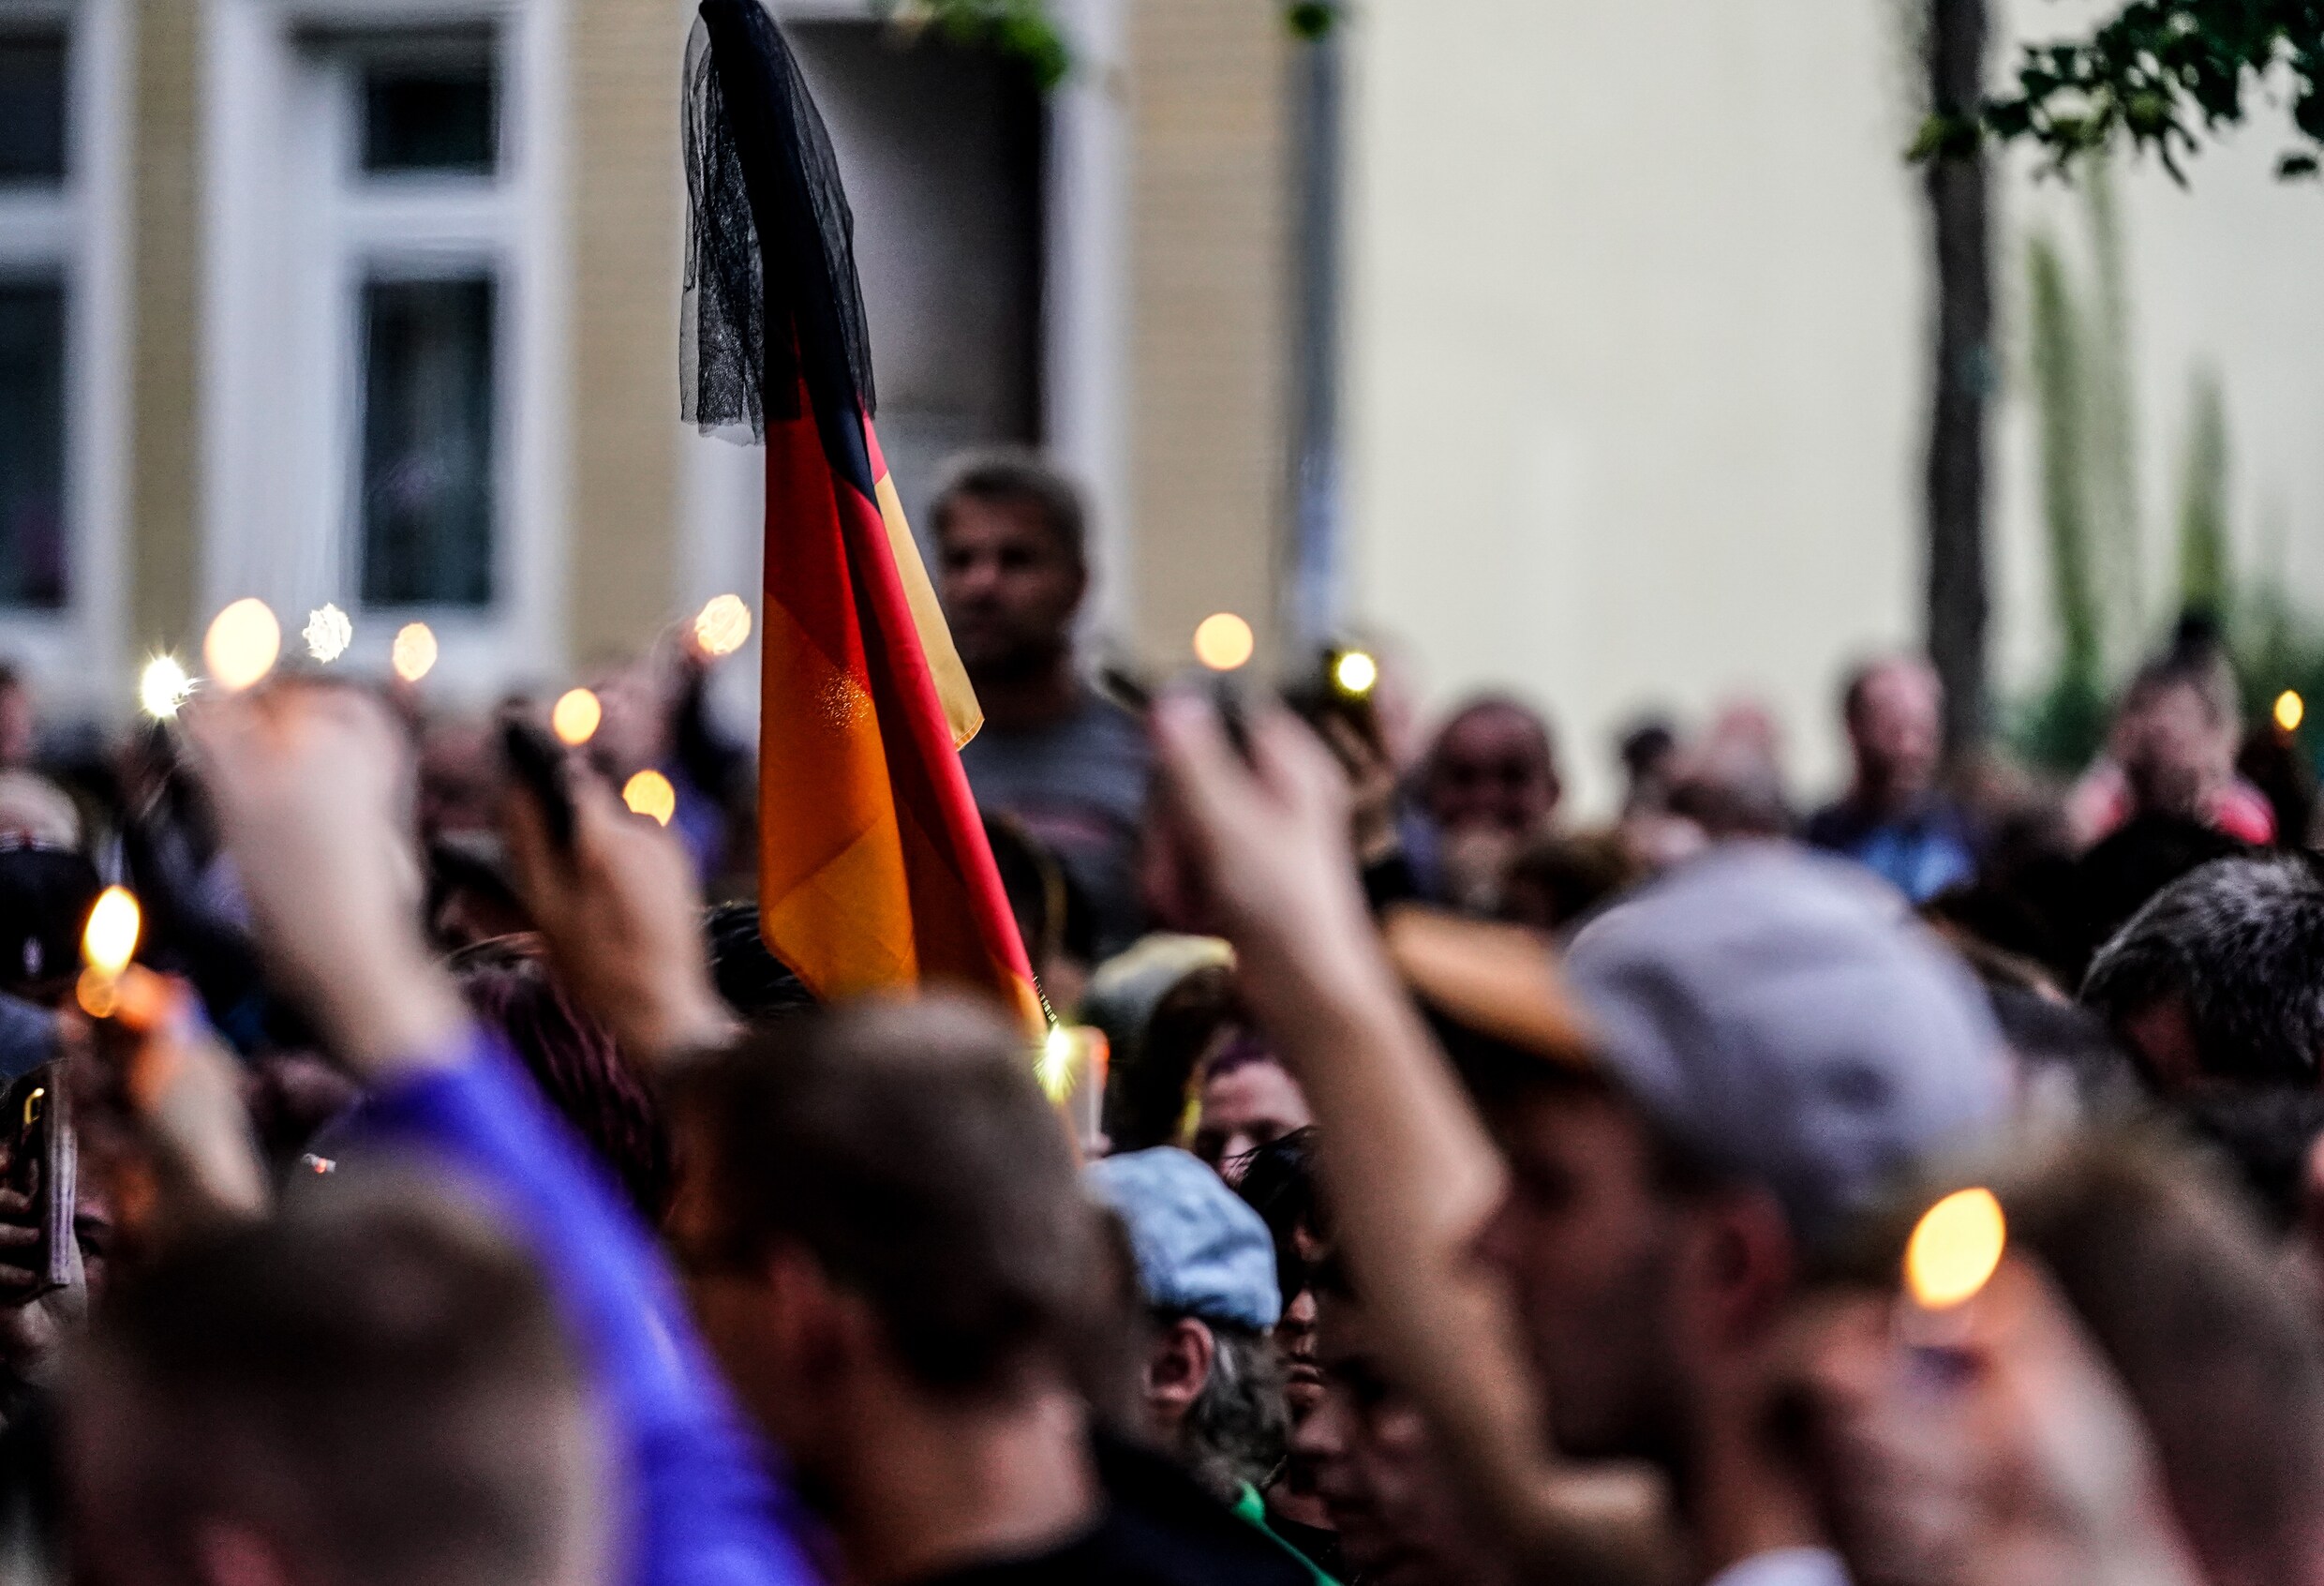 Extreemrechtse groeperingen houden zondag nieuwe protestmars in Duitsland